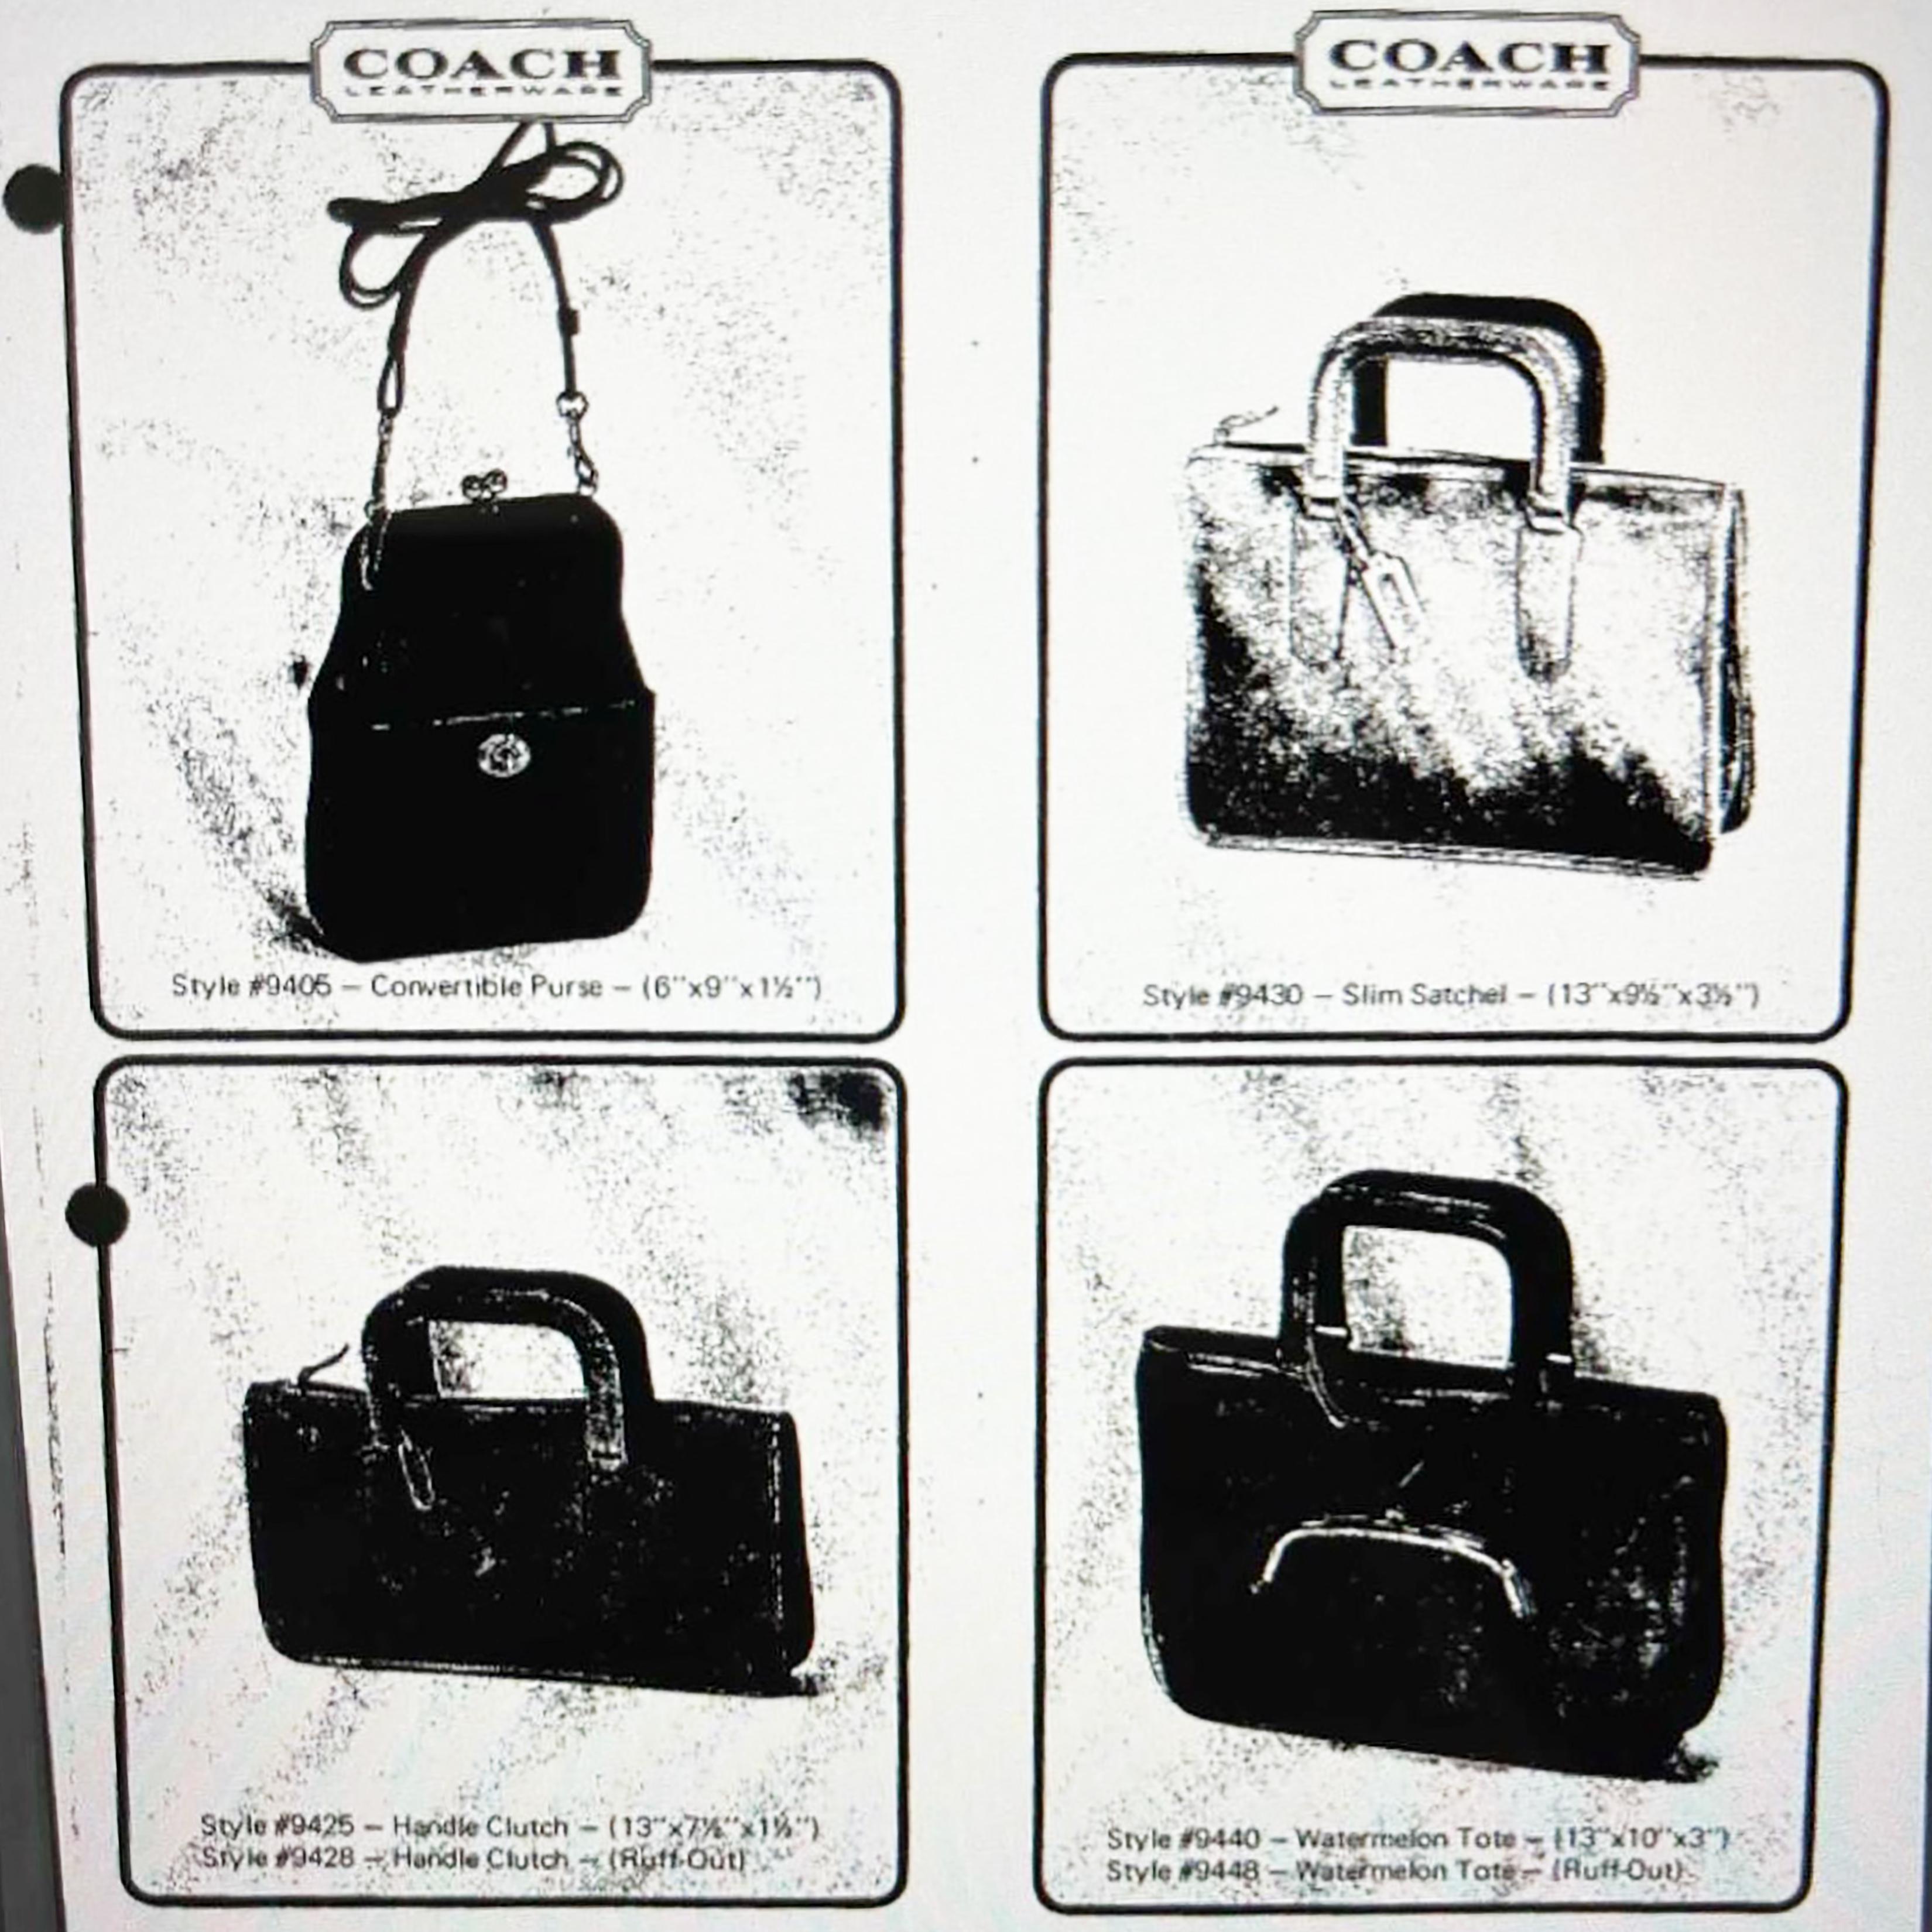 Vintage Coach Bag Bonnie Cashin Convertible Purse Rare Kisslock Turnlock Bag #94 2